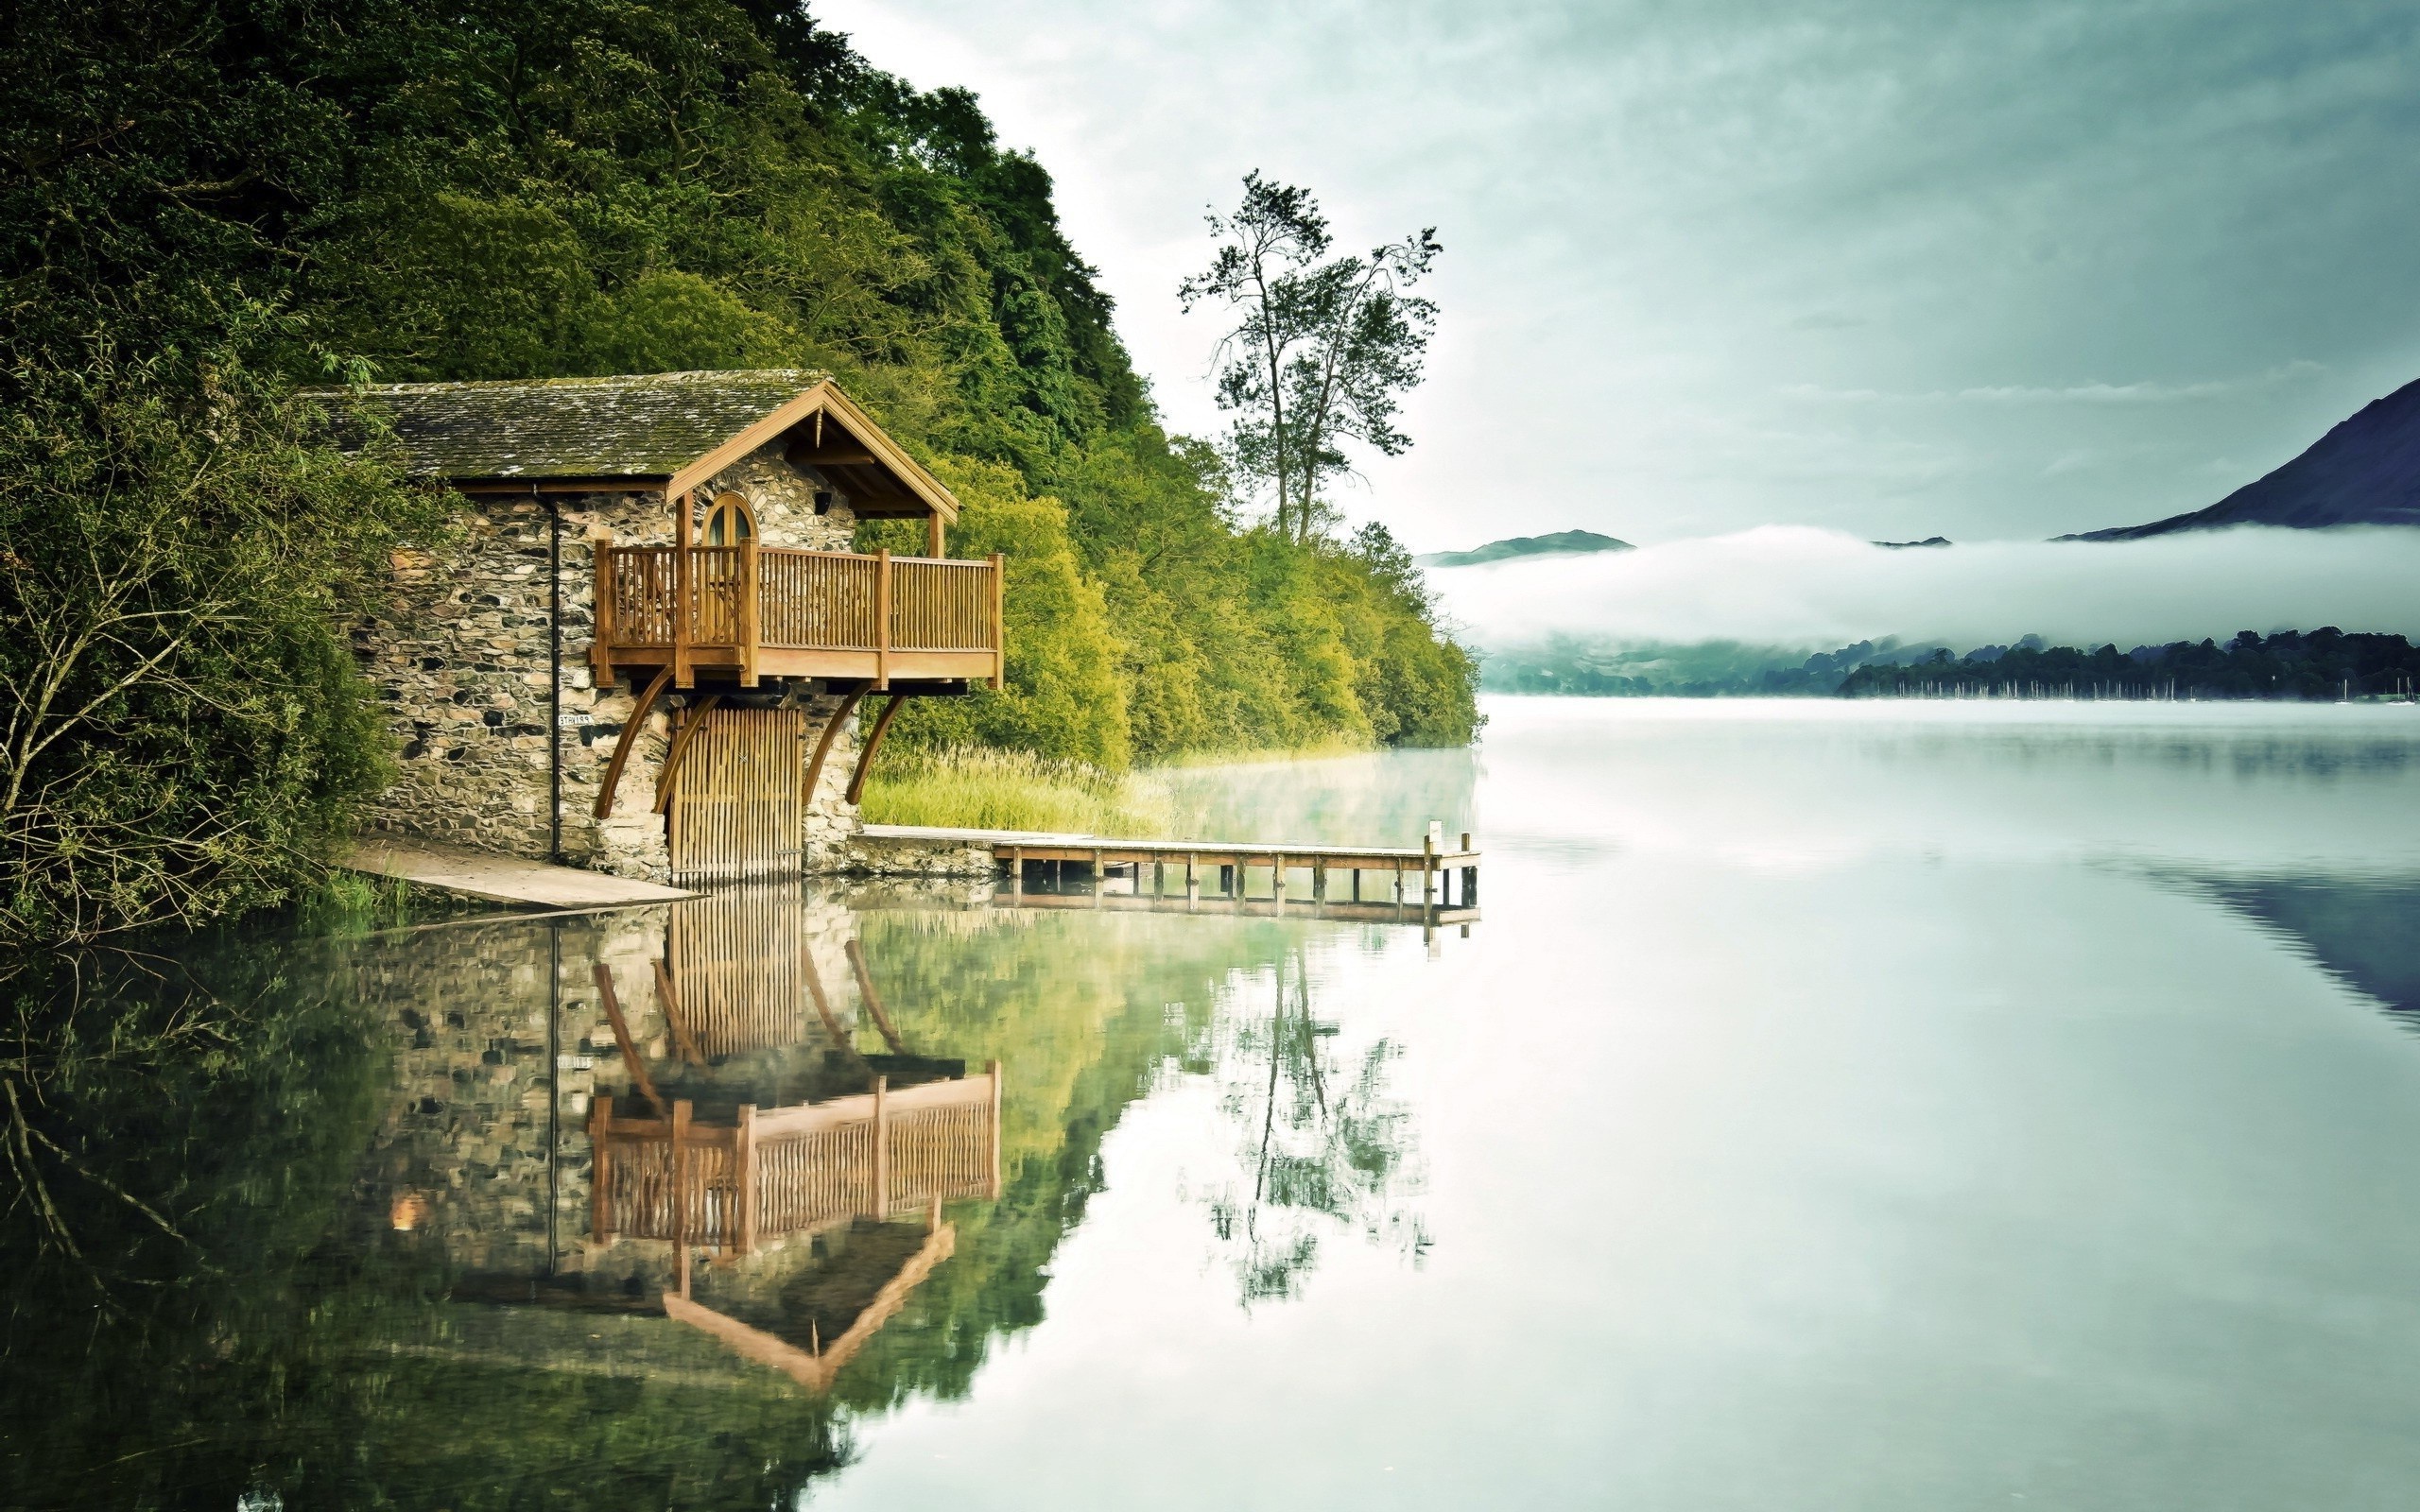 Brick house at the lake / 2560 x 1600 / Nature / Photography ...